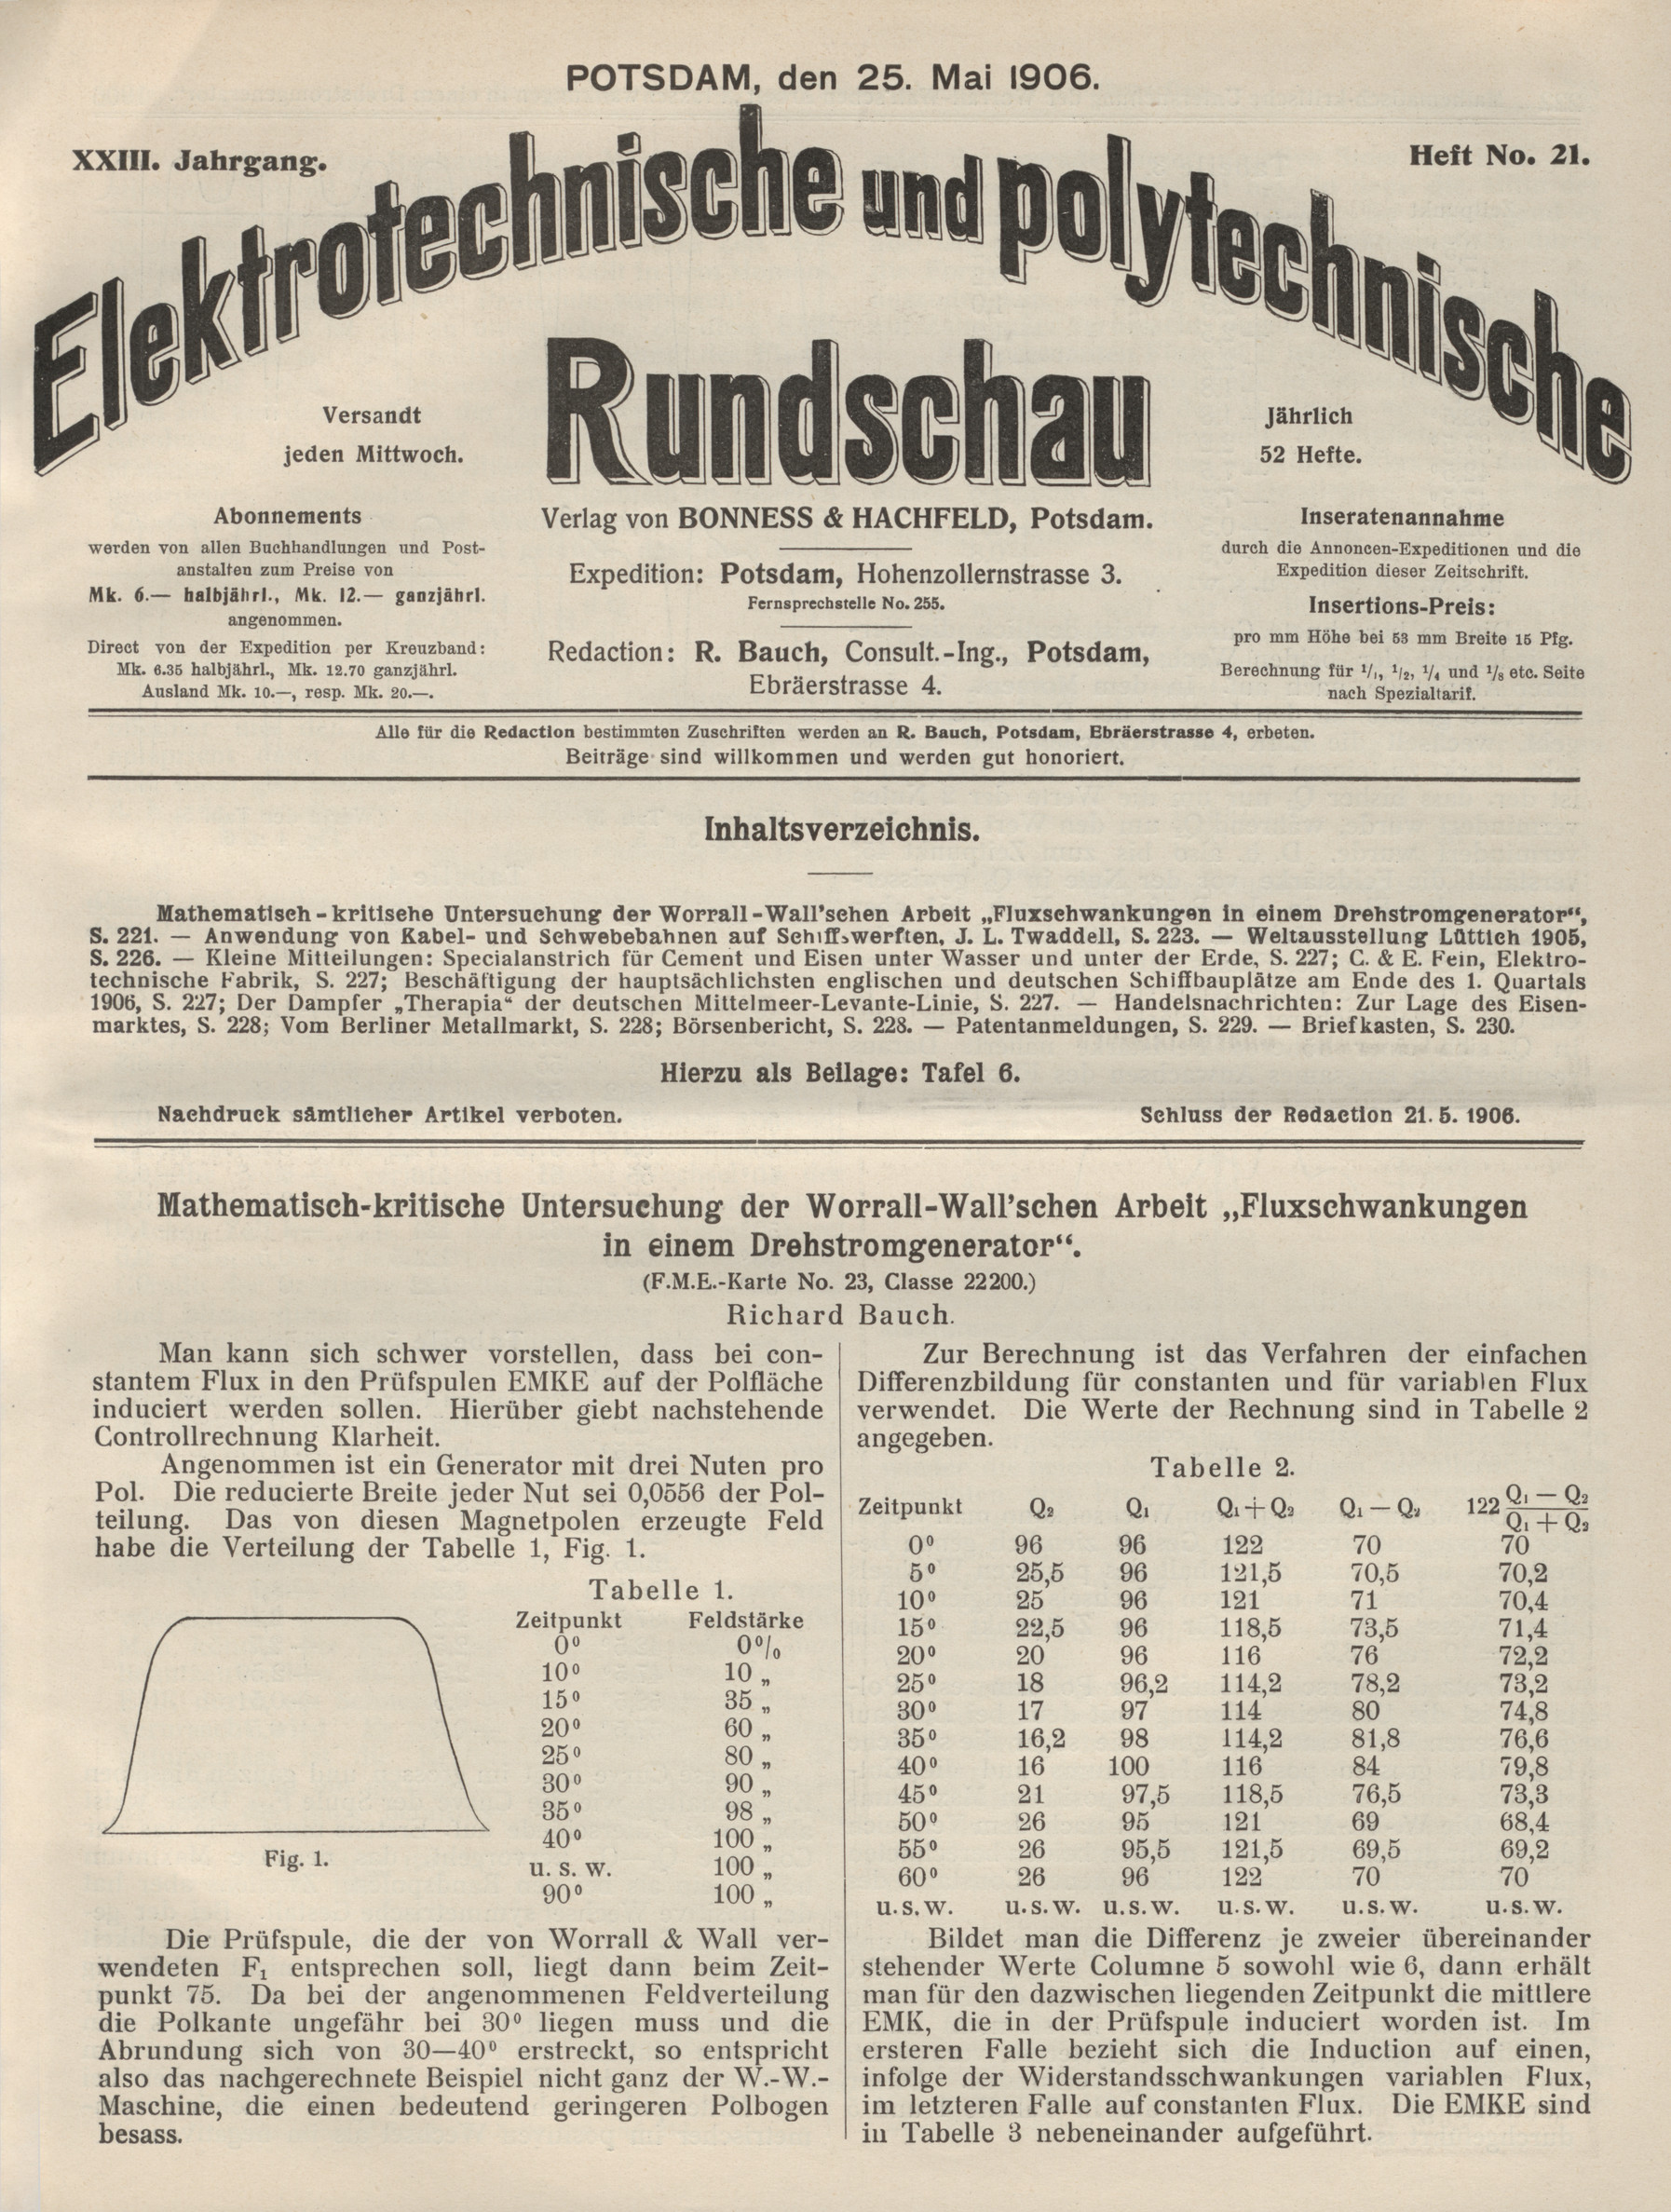 Elektrotechnische und polytechnische Rundschau, XXIII. Jahrgang, Heft No. 21